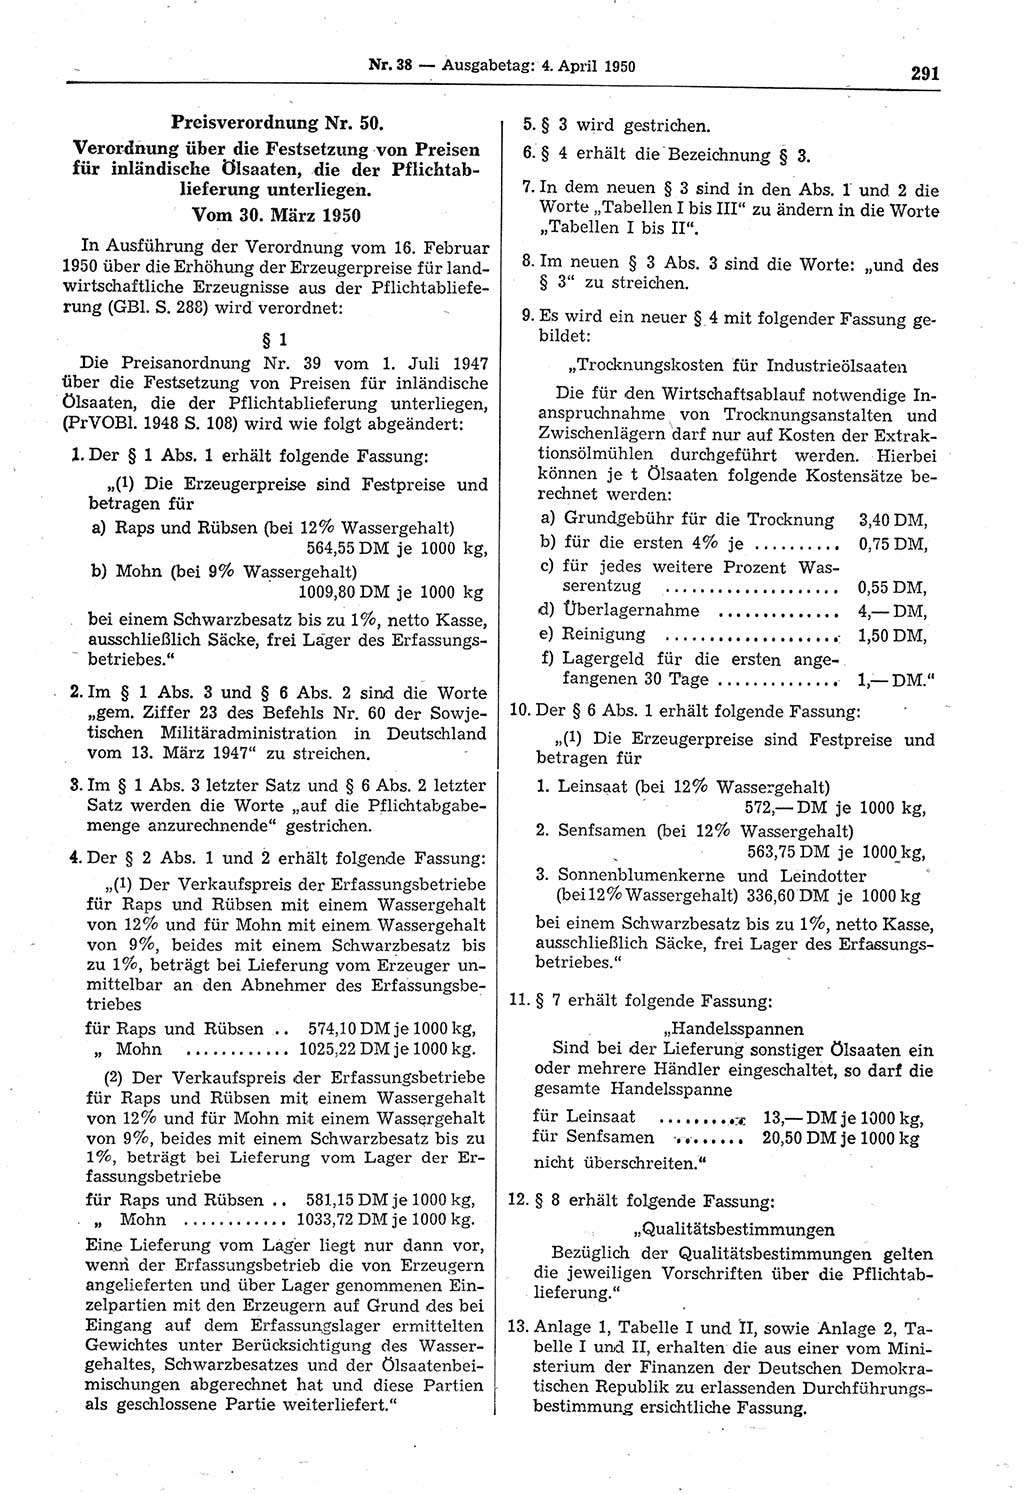 Gesetzblatt (GBl.) der Deutschen Demokratischen Republik (DDR) 1950, Seite 291 (GBl. DDR 1950, S. 291)